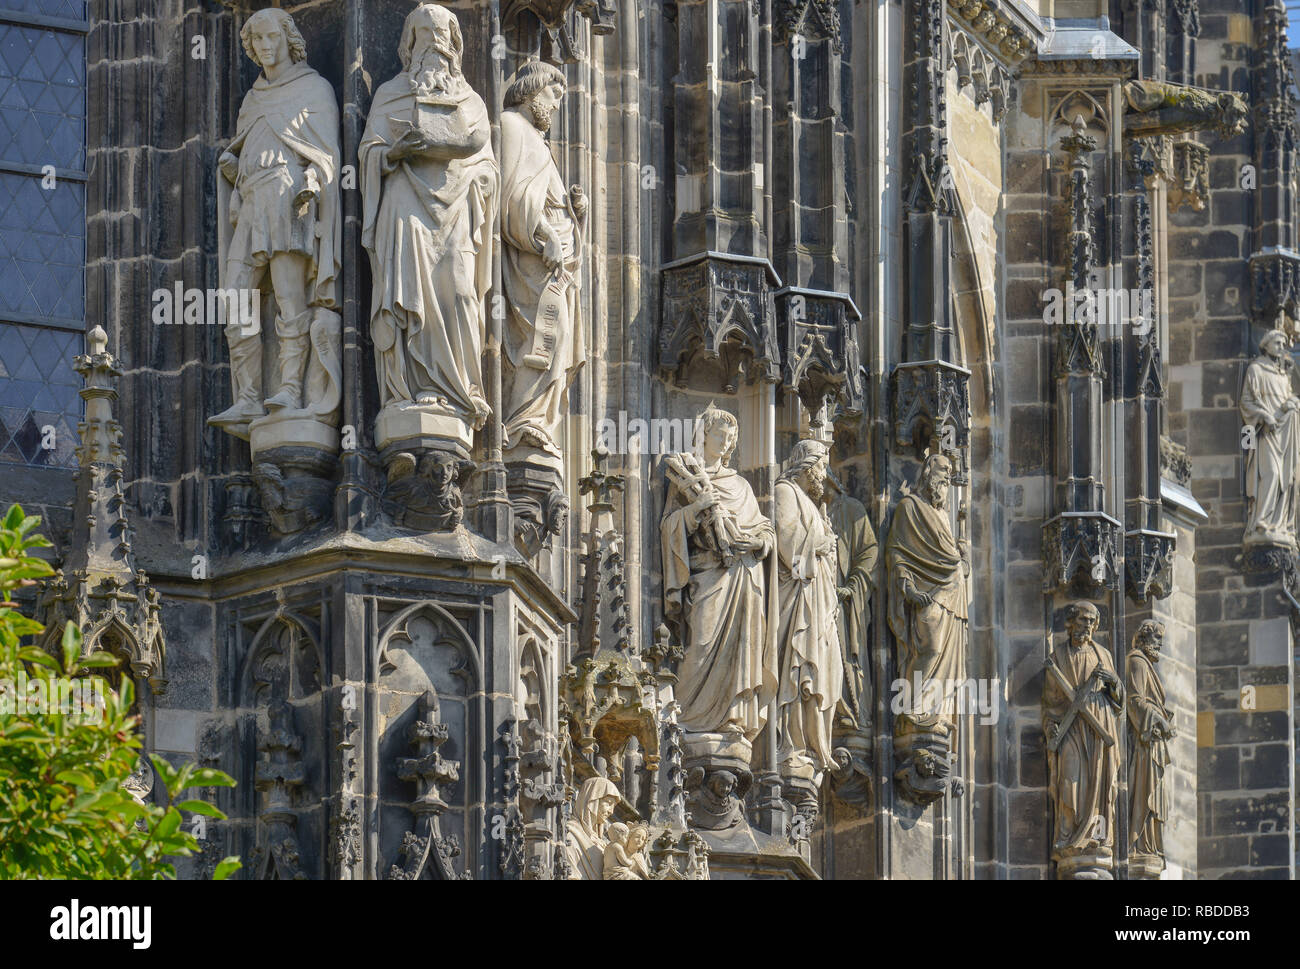 L'extérieur de sculptures, cathédrale, Aix-la-Chapelle, Rhénanie du Nord-Westphalie, Allemagne, Aussenskulpturen, Dom, Nordrhein-Westfalen, Deutschland Banque D'Images